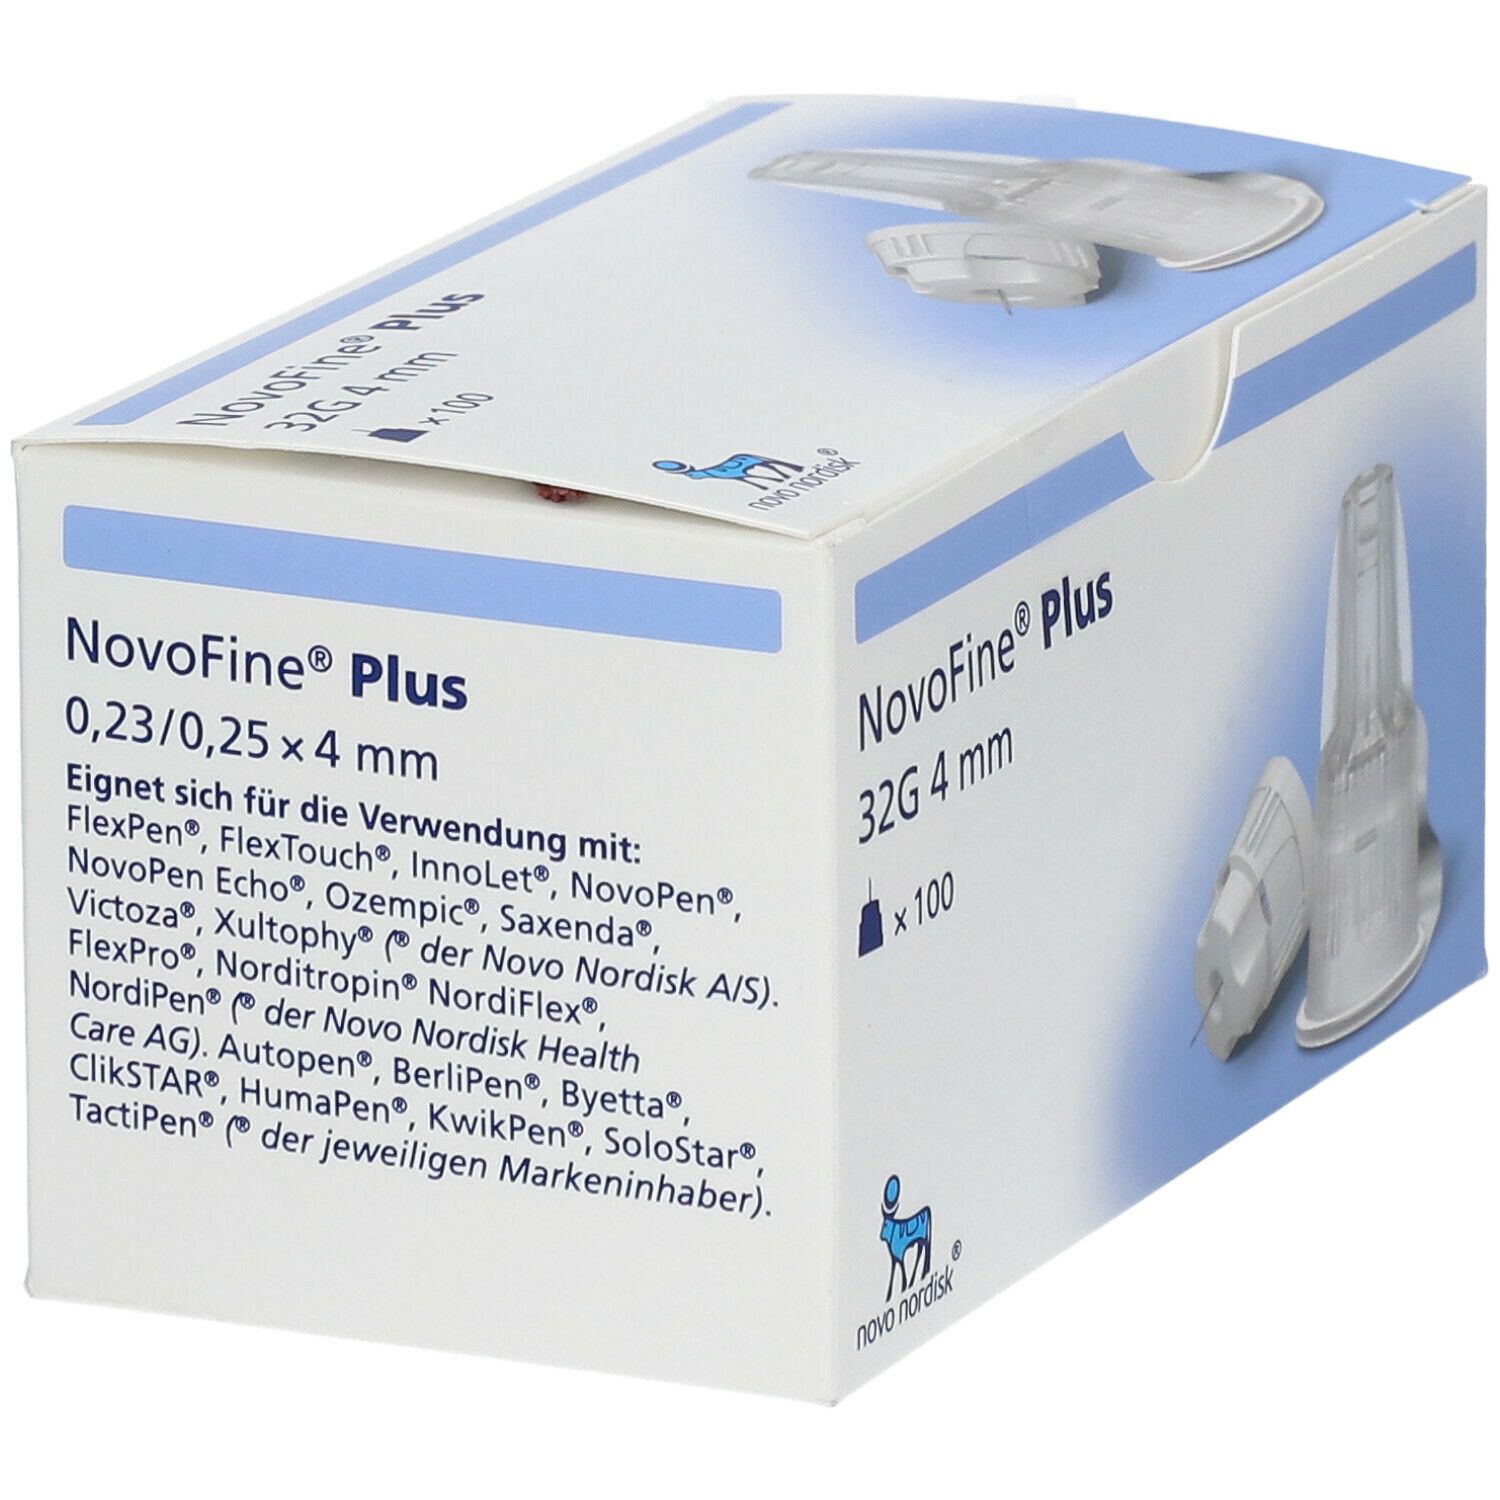 Buy online Novofine Plus Injektionsnadeln 4mm 32g 100 Stück at